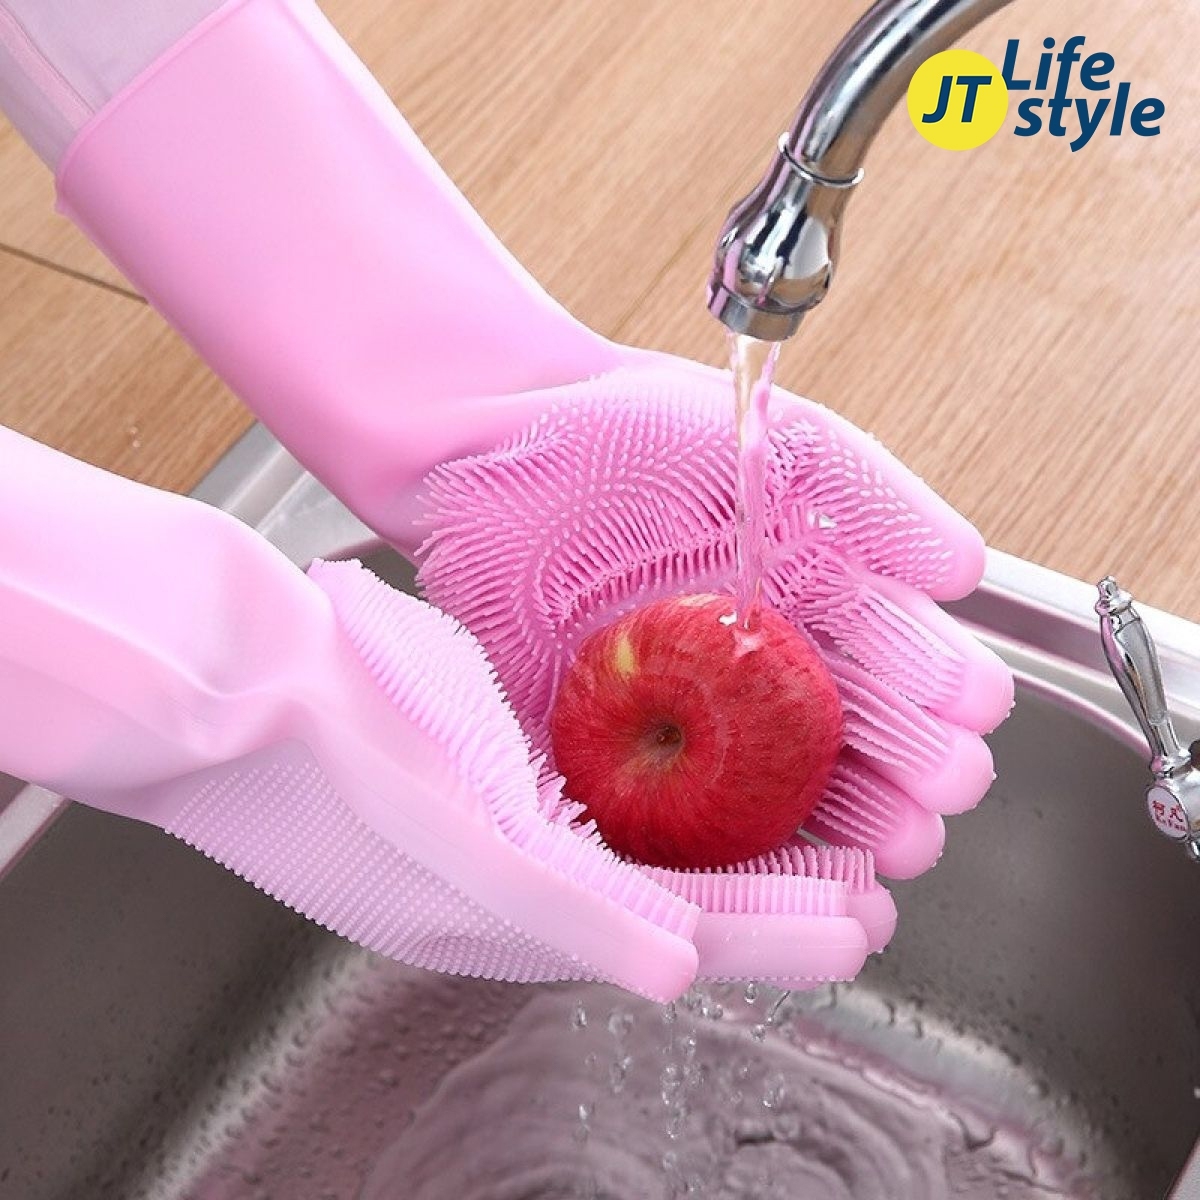 ถุงมือล้างจาน มีแปรงถูในมือ  ถุงมือซิลิโคน ถุงมือครัว ถุงมือยางล้างจาน ถุงมือ